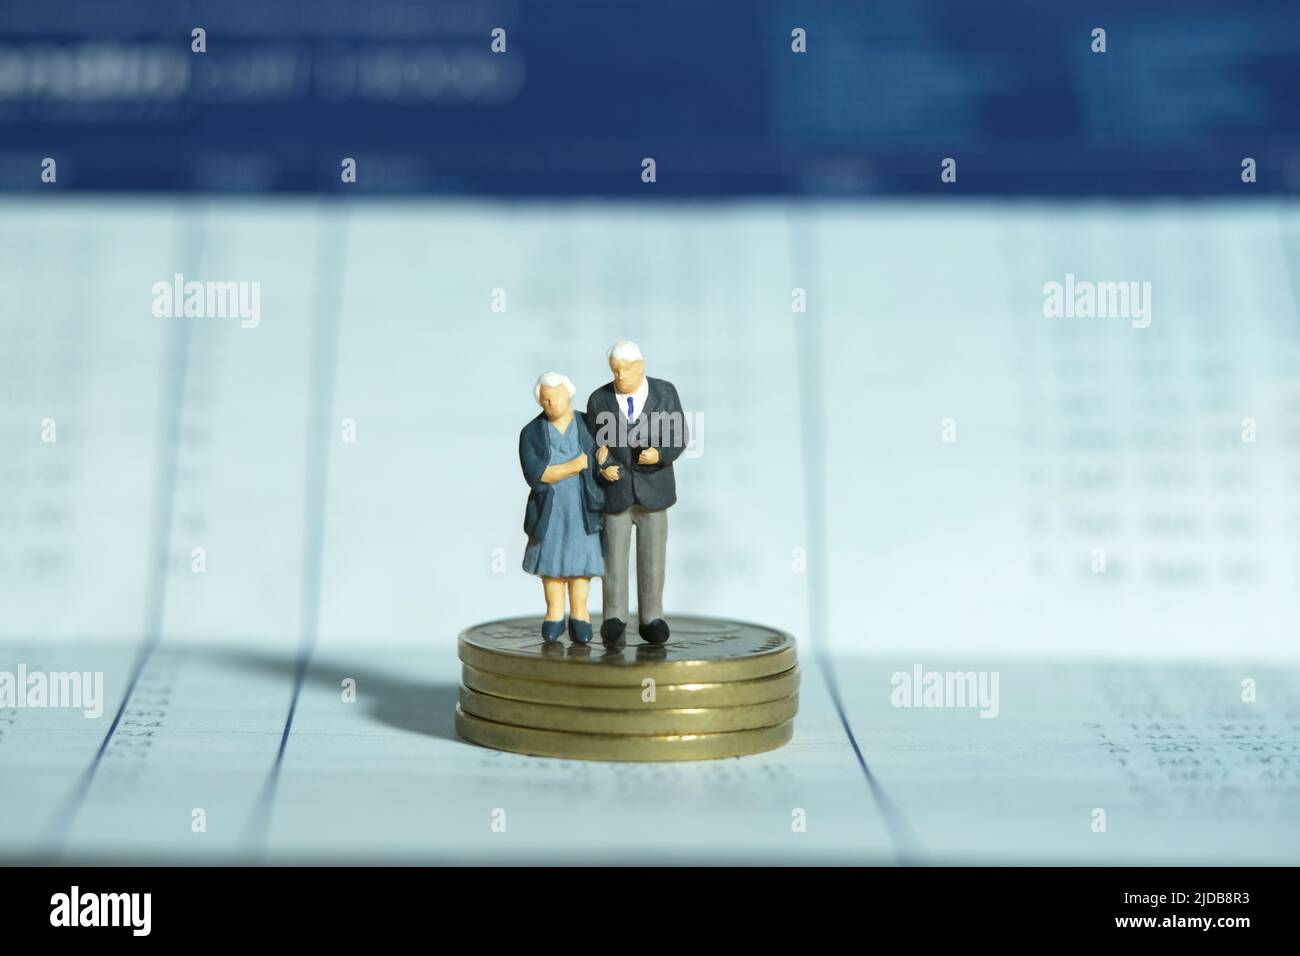 Miniatur Menschen Spielzeug konzeptuelle Fotografie. Ein älteres Paar, das über dem Münzstapel auf der geöffneten Buchbankkontoseite steht. Finanz- und Sparkonzept. Stockfoto